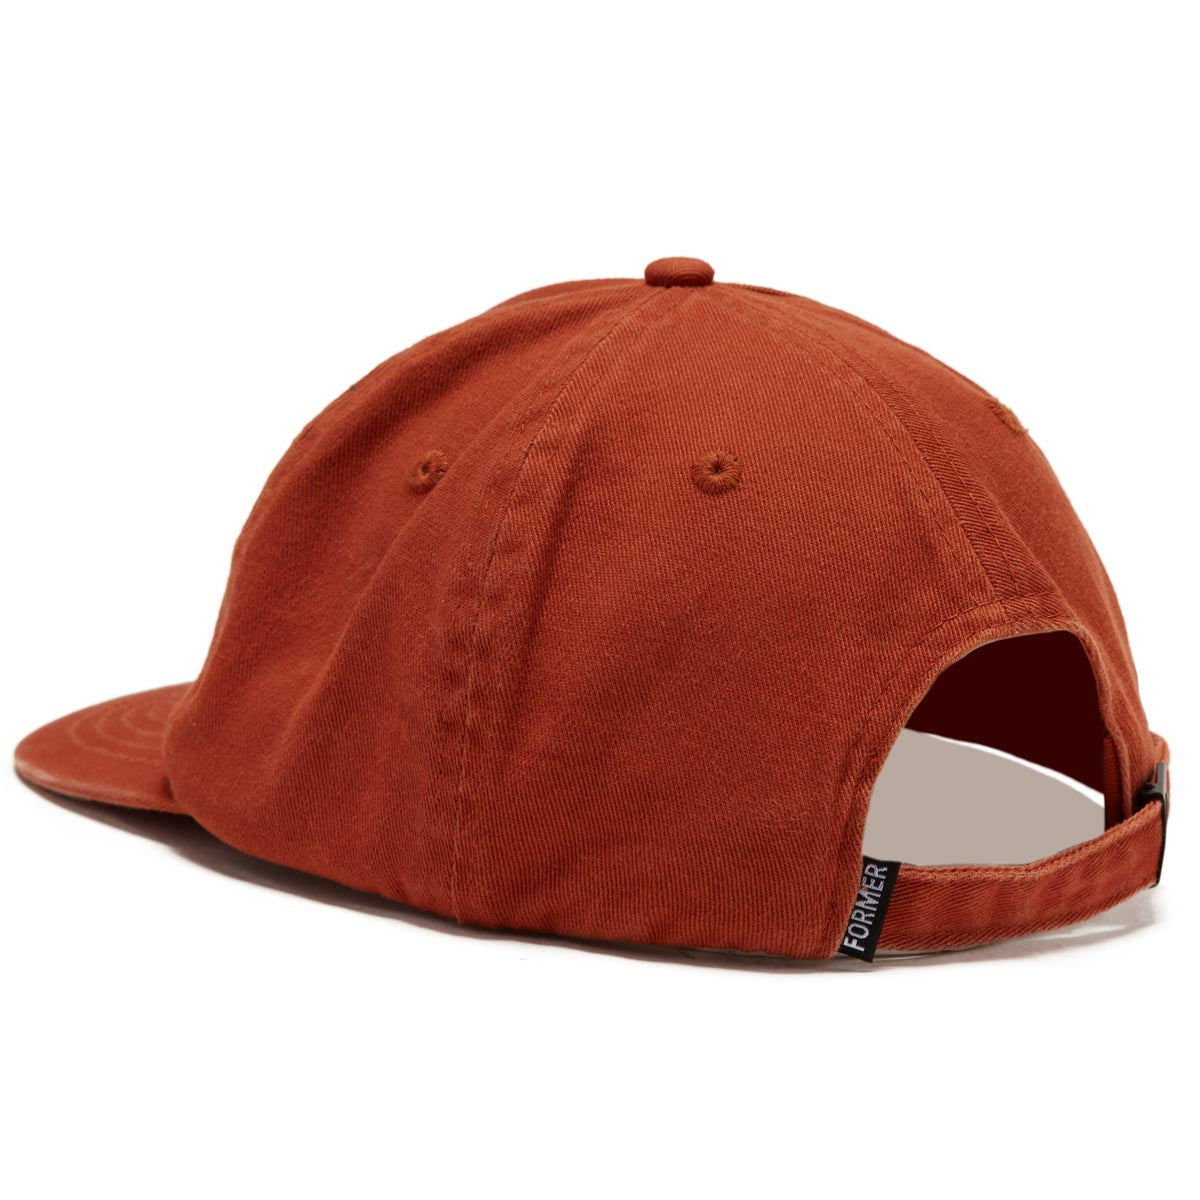 Former Crux Scan Hat - Orange image 2